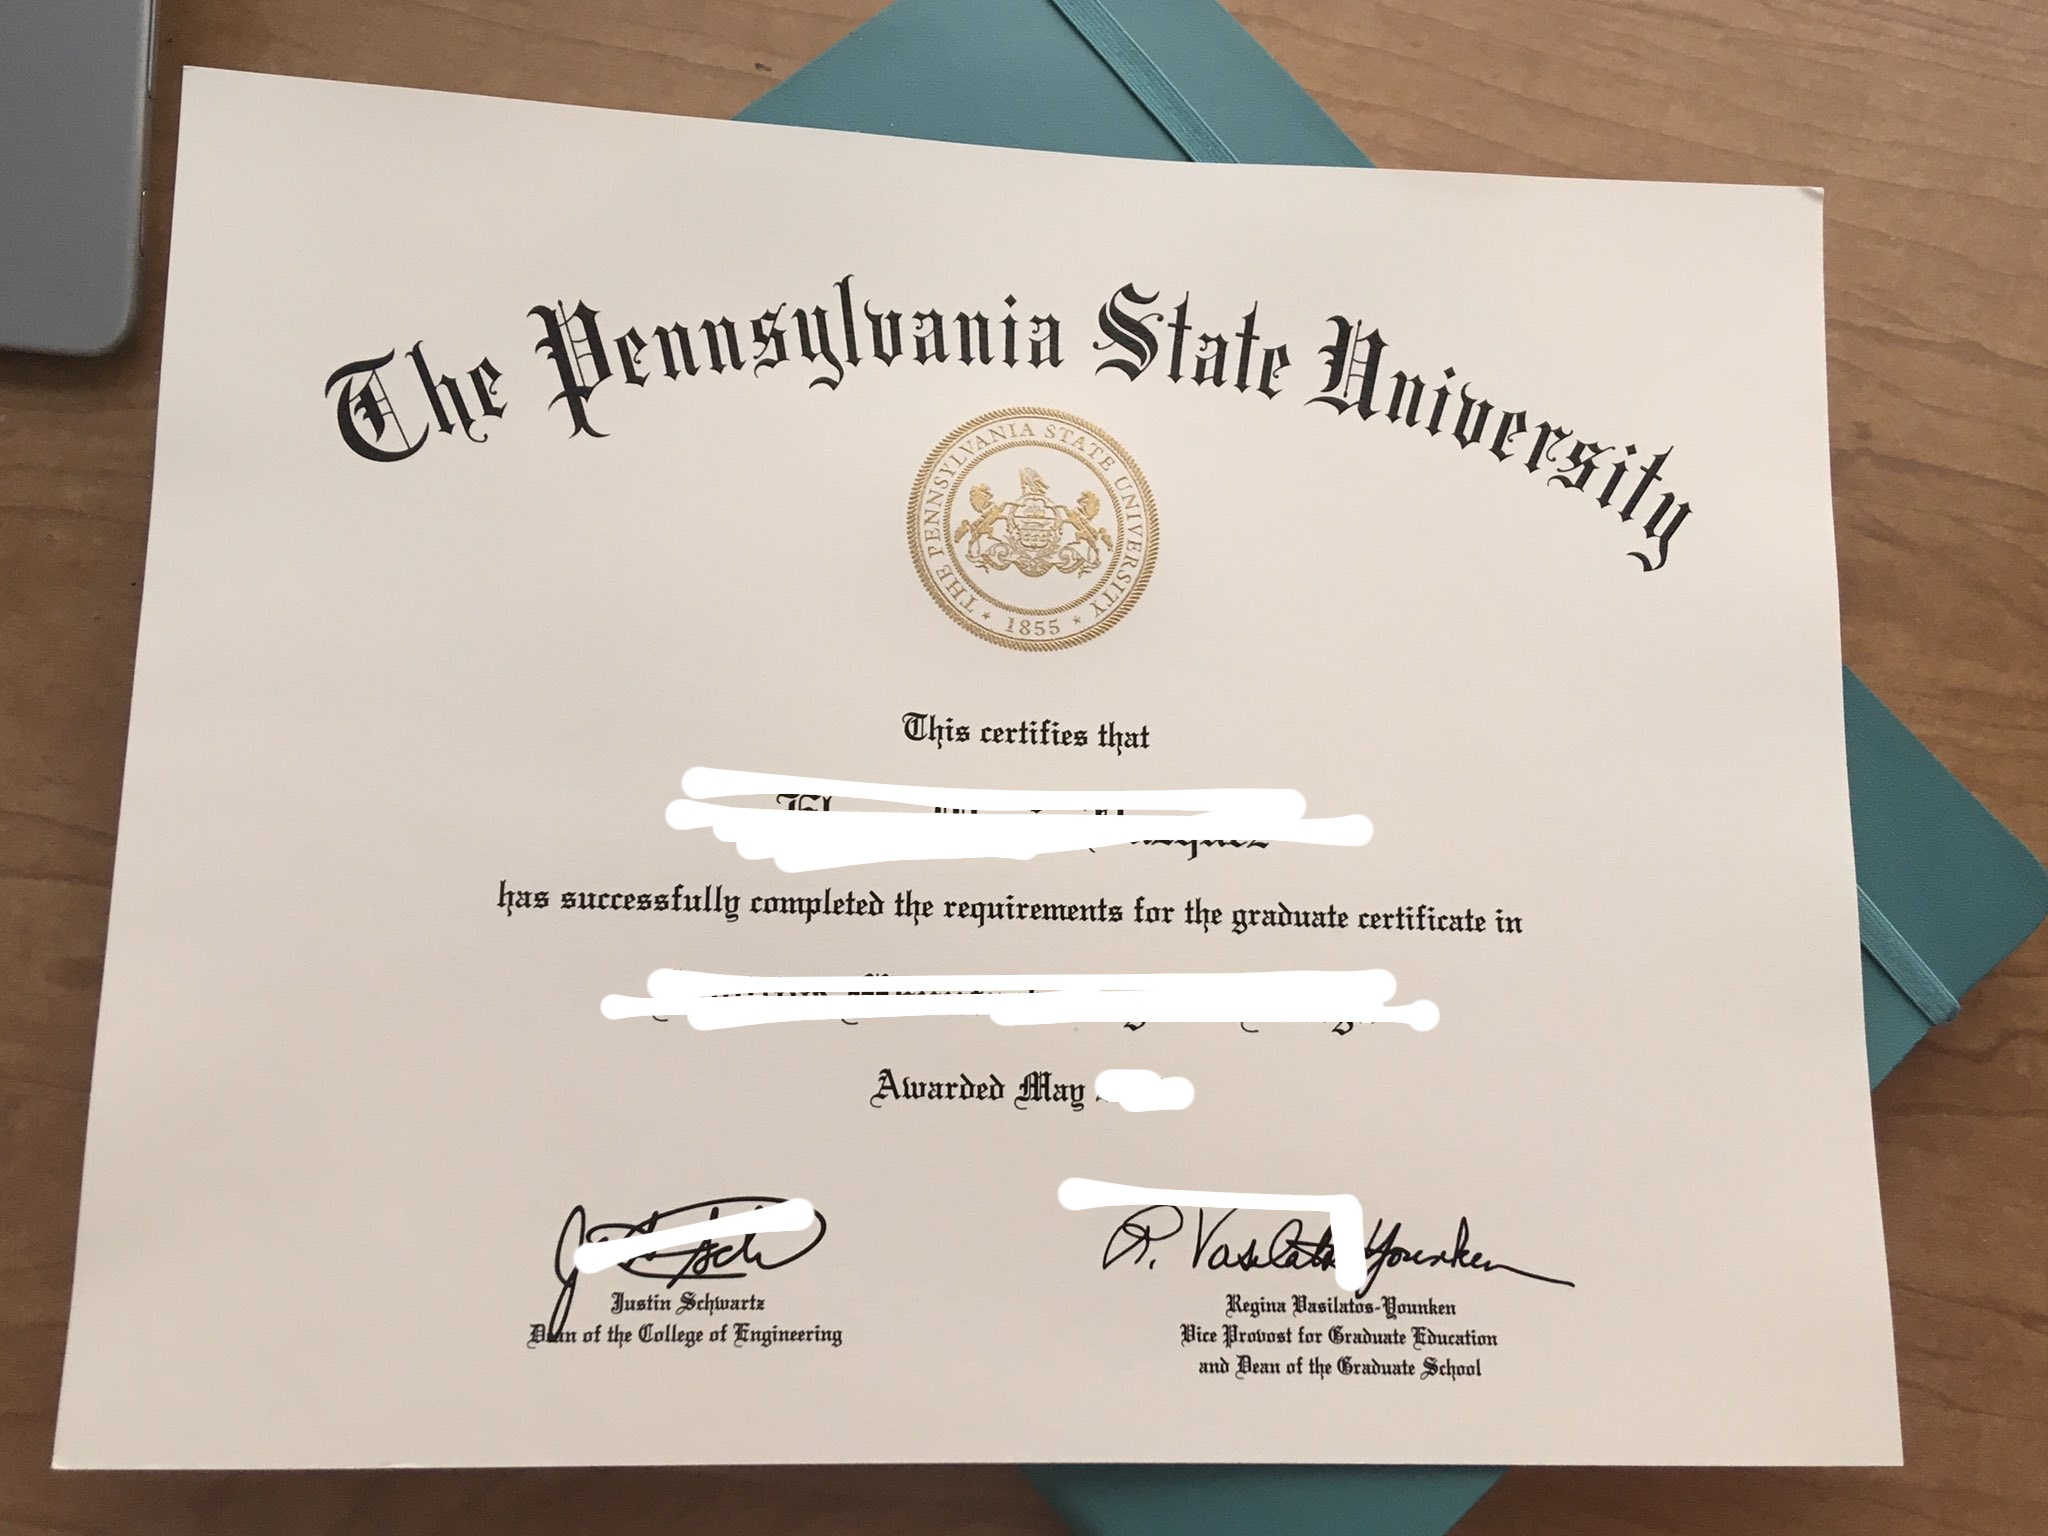 美国宾夕法尼亚州立大学毕业证书外壳信息（Pennsylvania State University Diploma）